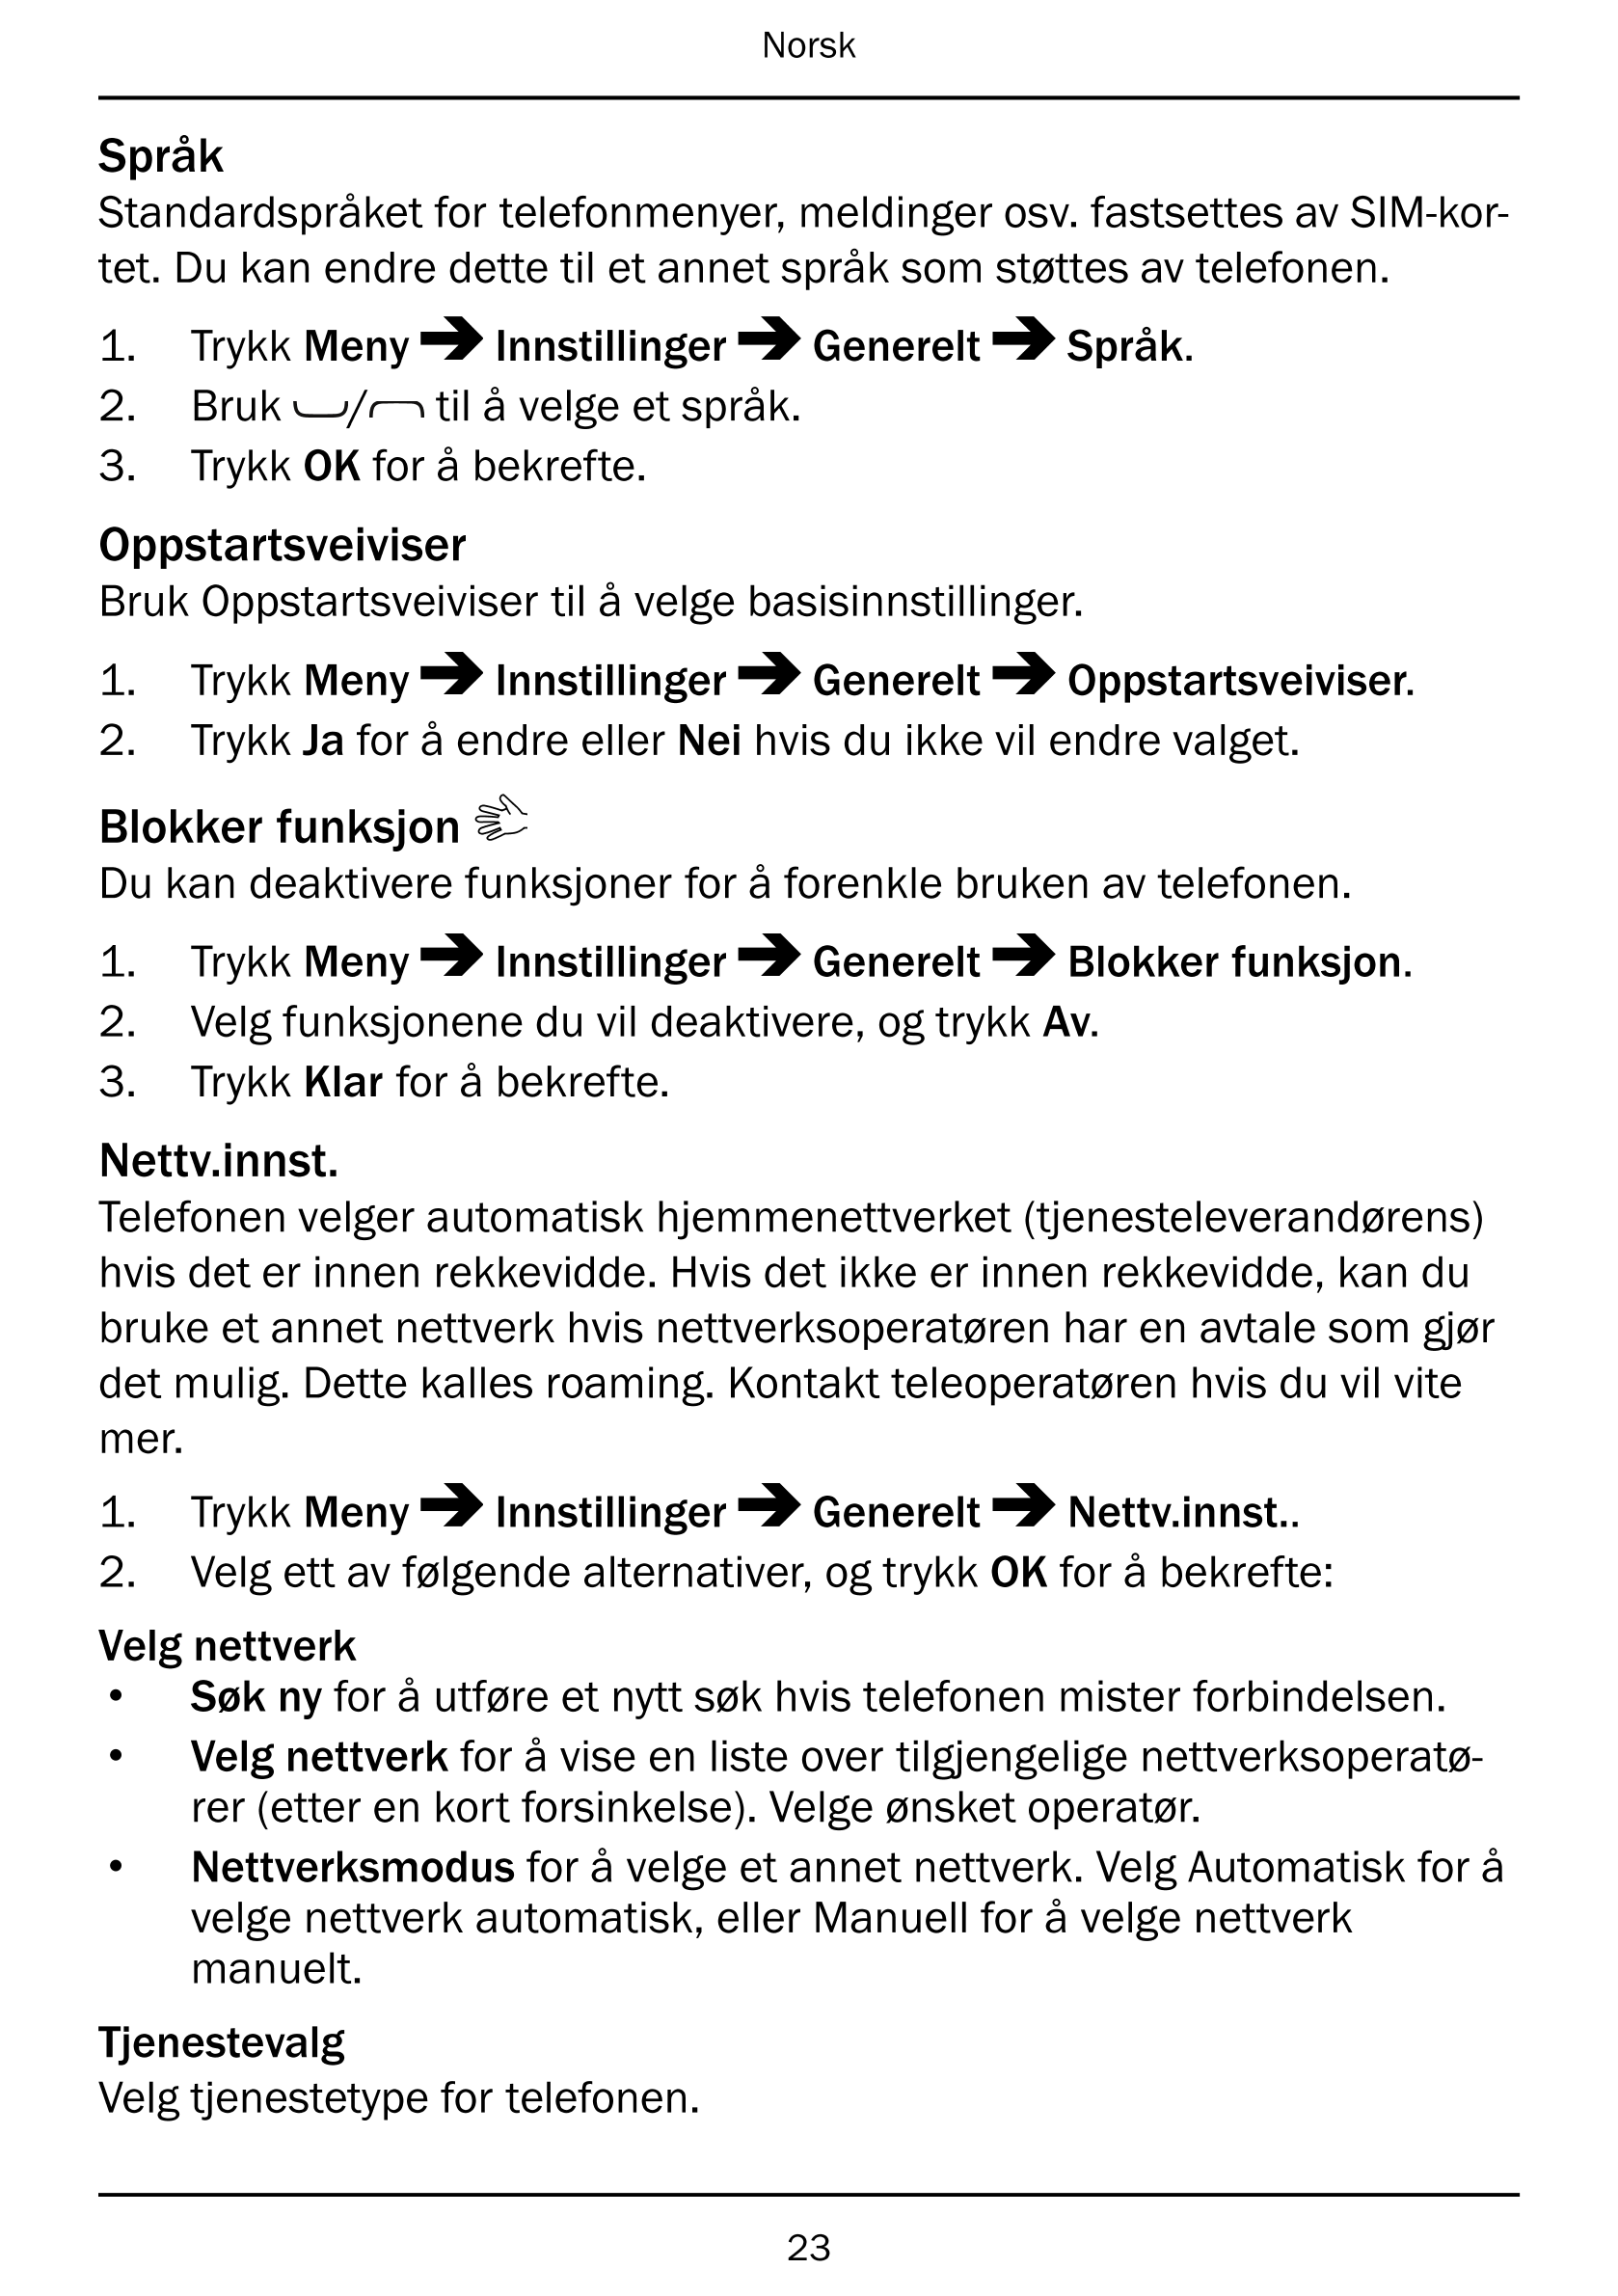 Norsk
Språk
Standardspråket for telefonmenyer, meldinger osv. fastsettes av SIM-kor-
tet. Du kan endre dette til et annet språk 